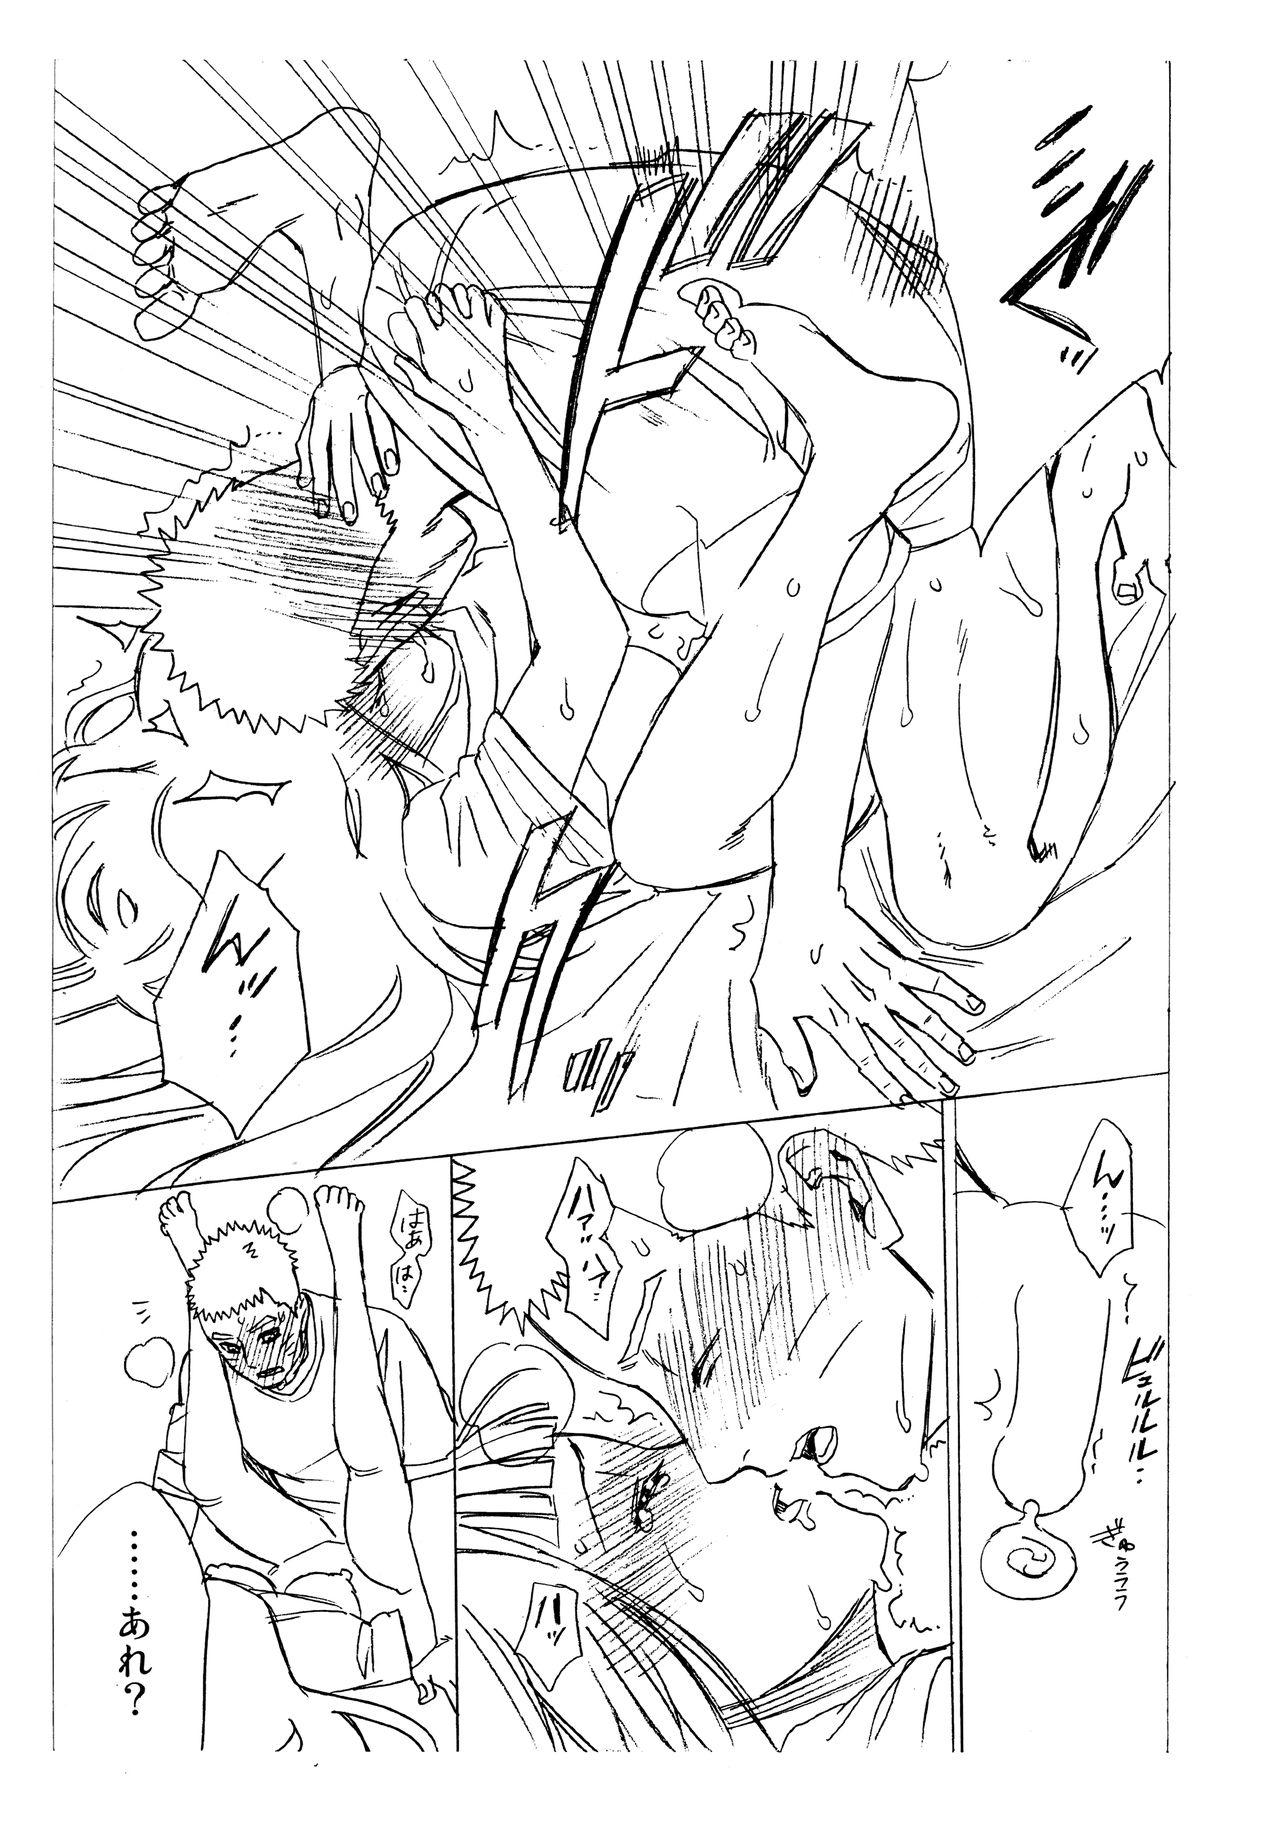 Neighbor 1 + 2 | Ato no Futari v1 - Naruto Dress - Page 73